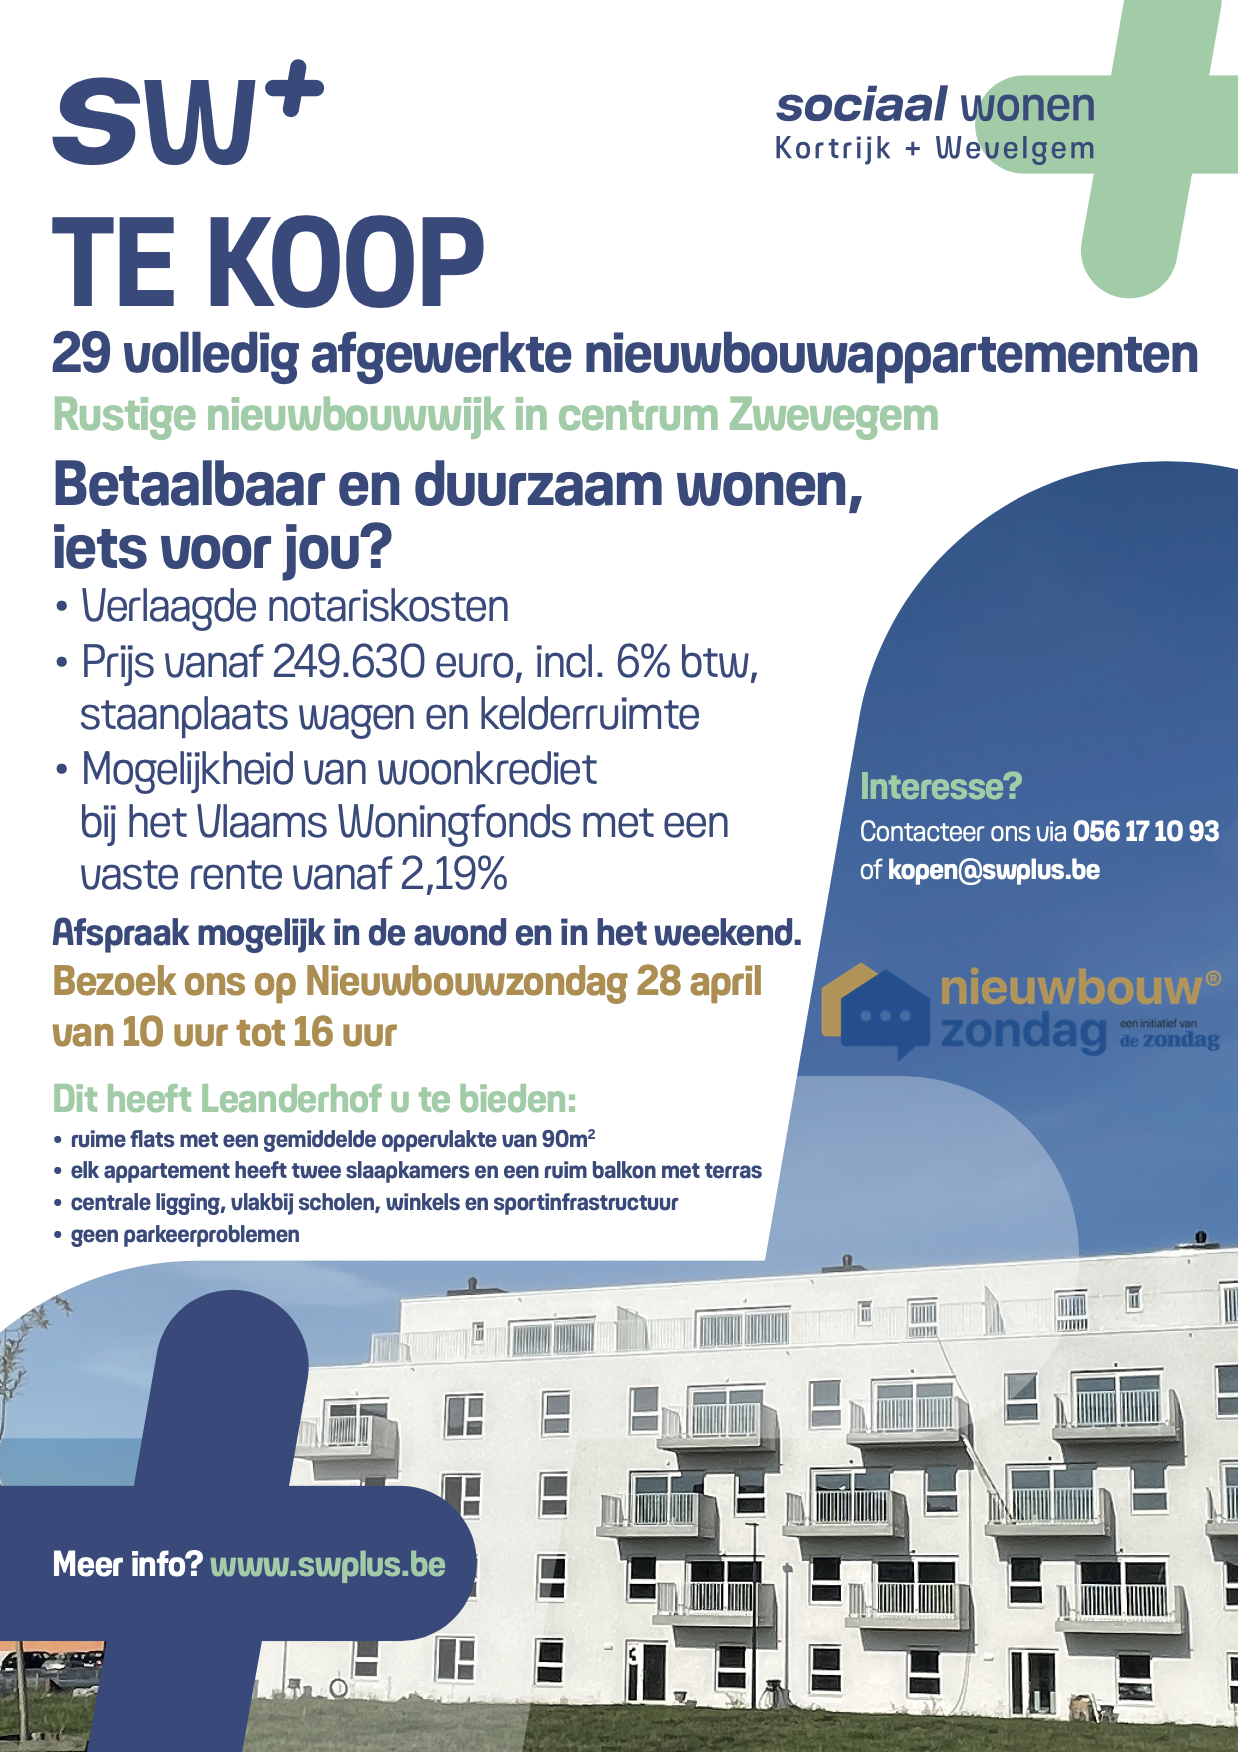 Featured image for “Ook SW+ neemt deel aan Nieuwbouwzondag”